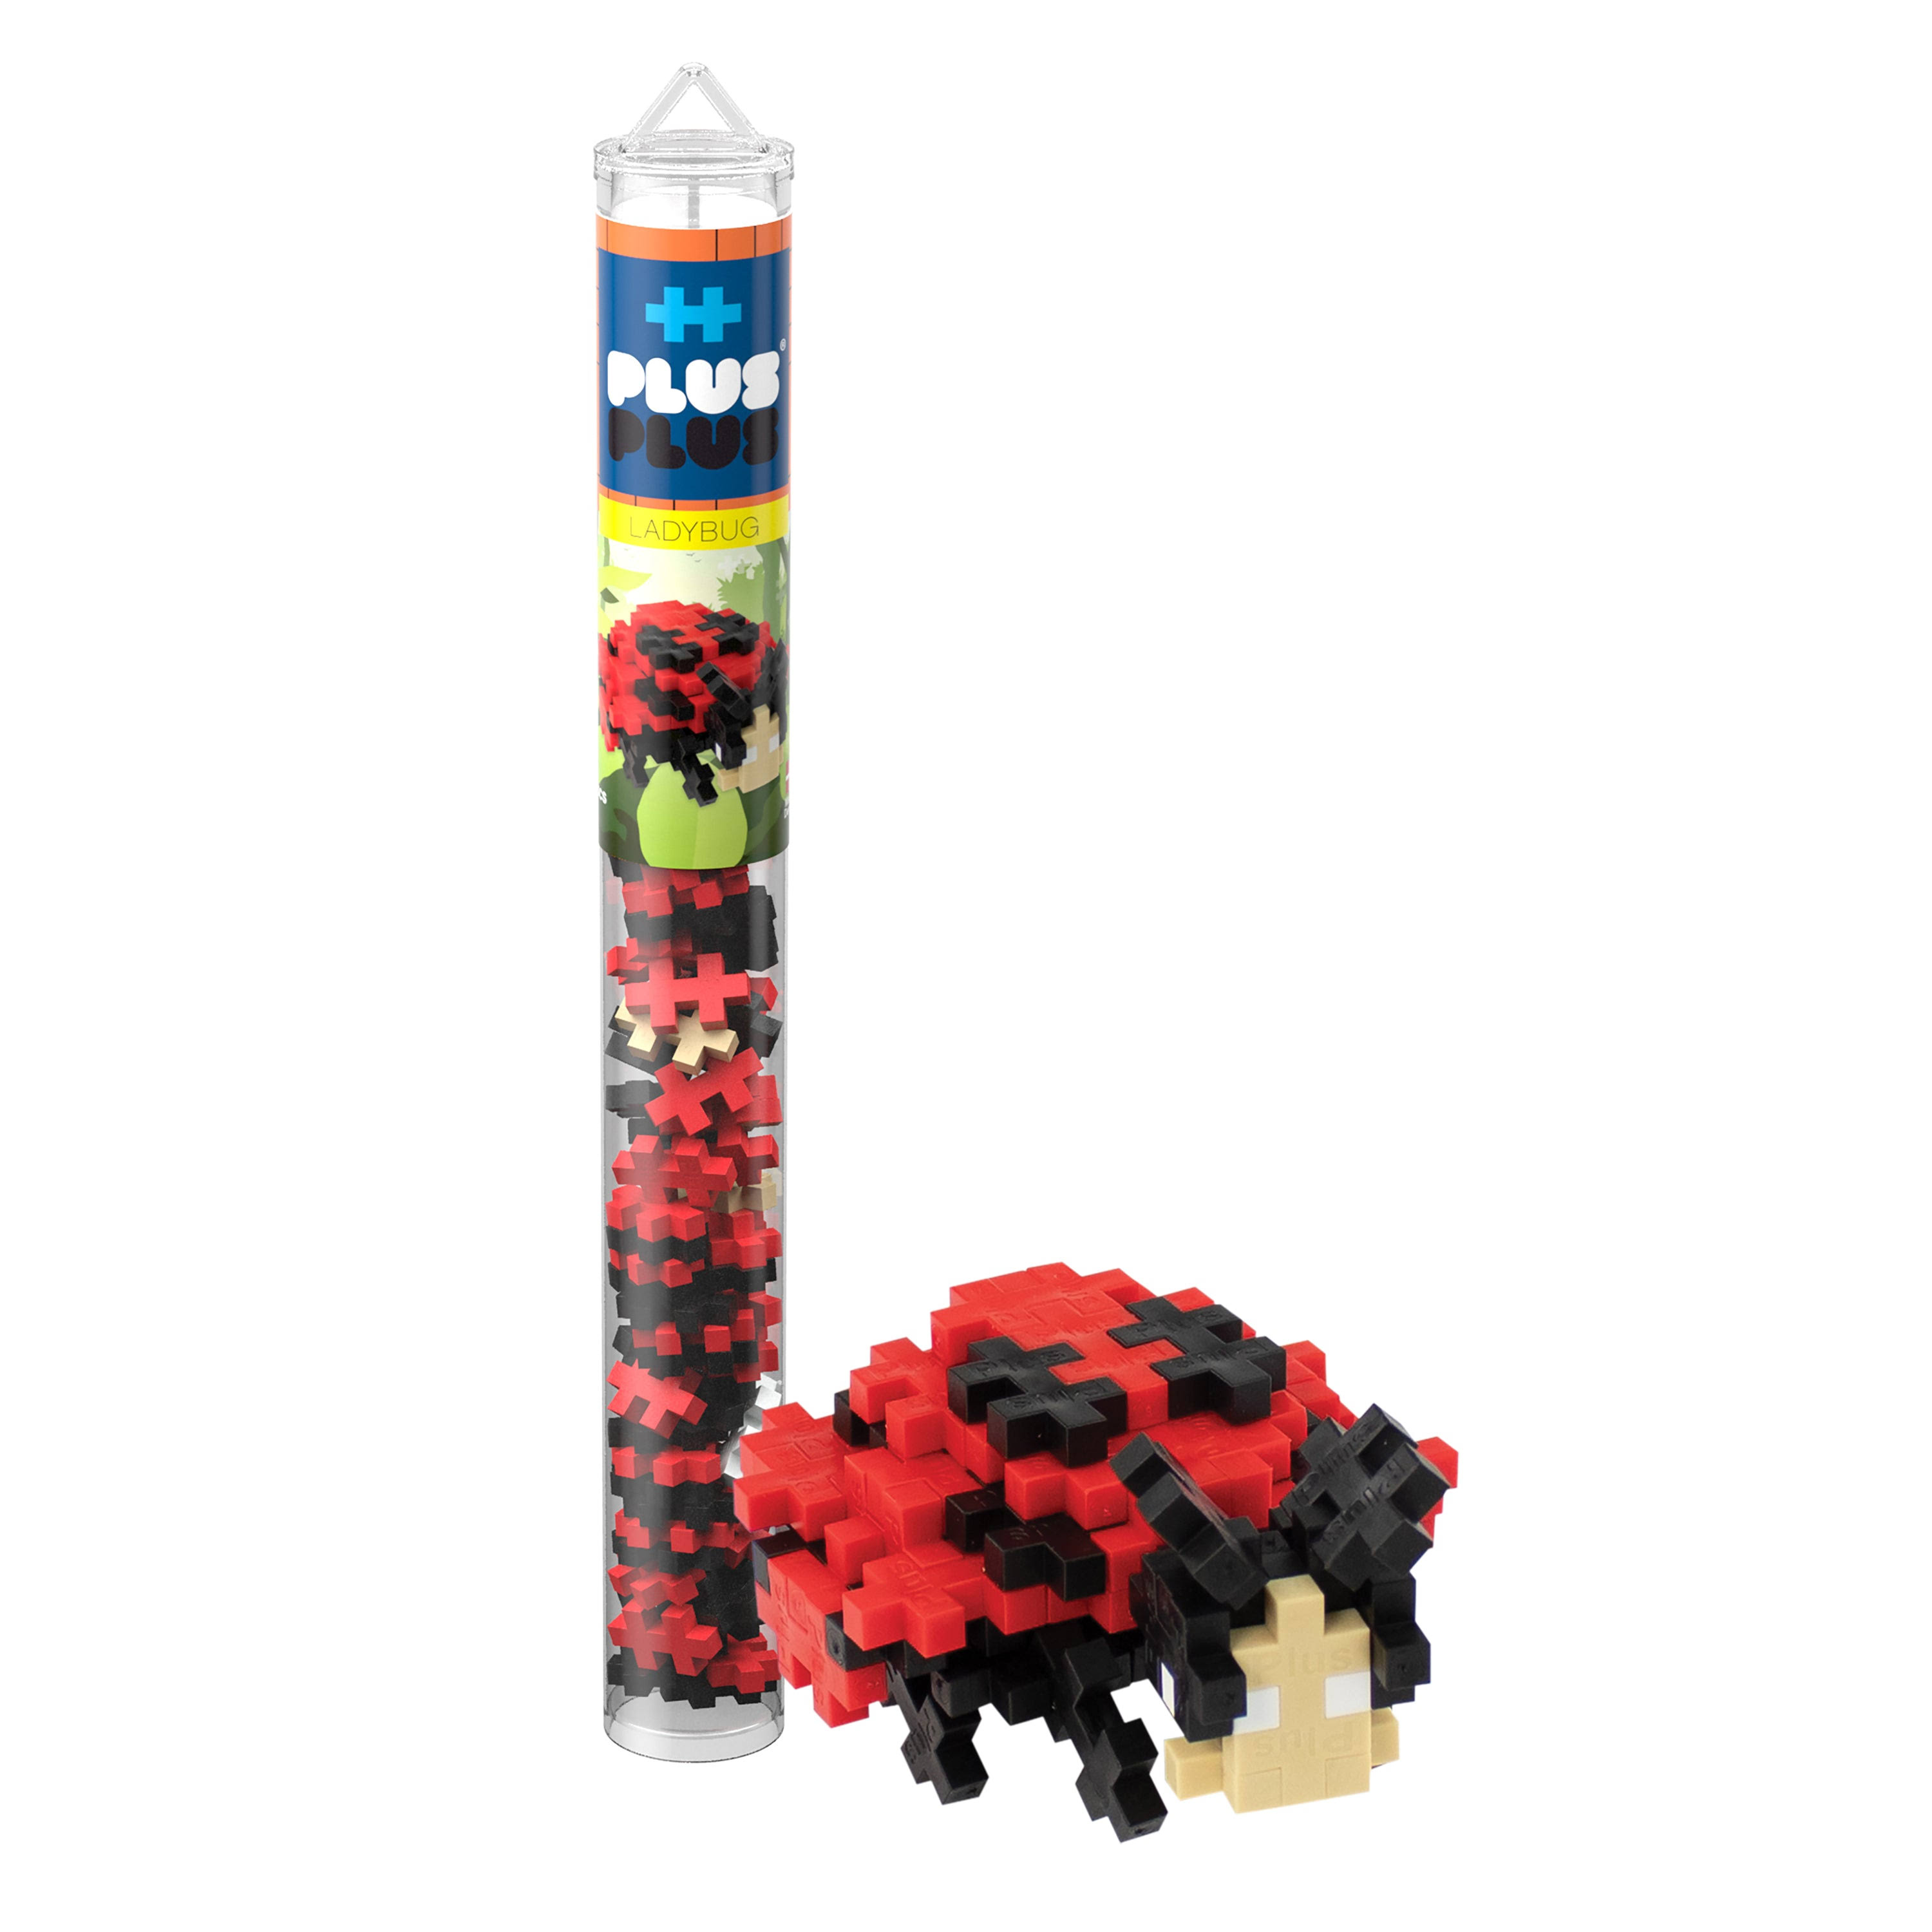 Plus Plus Mini Maker Tube Ladybug 70 Piece, Construction Building S